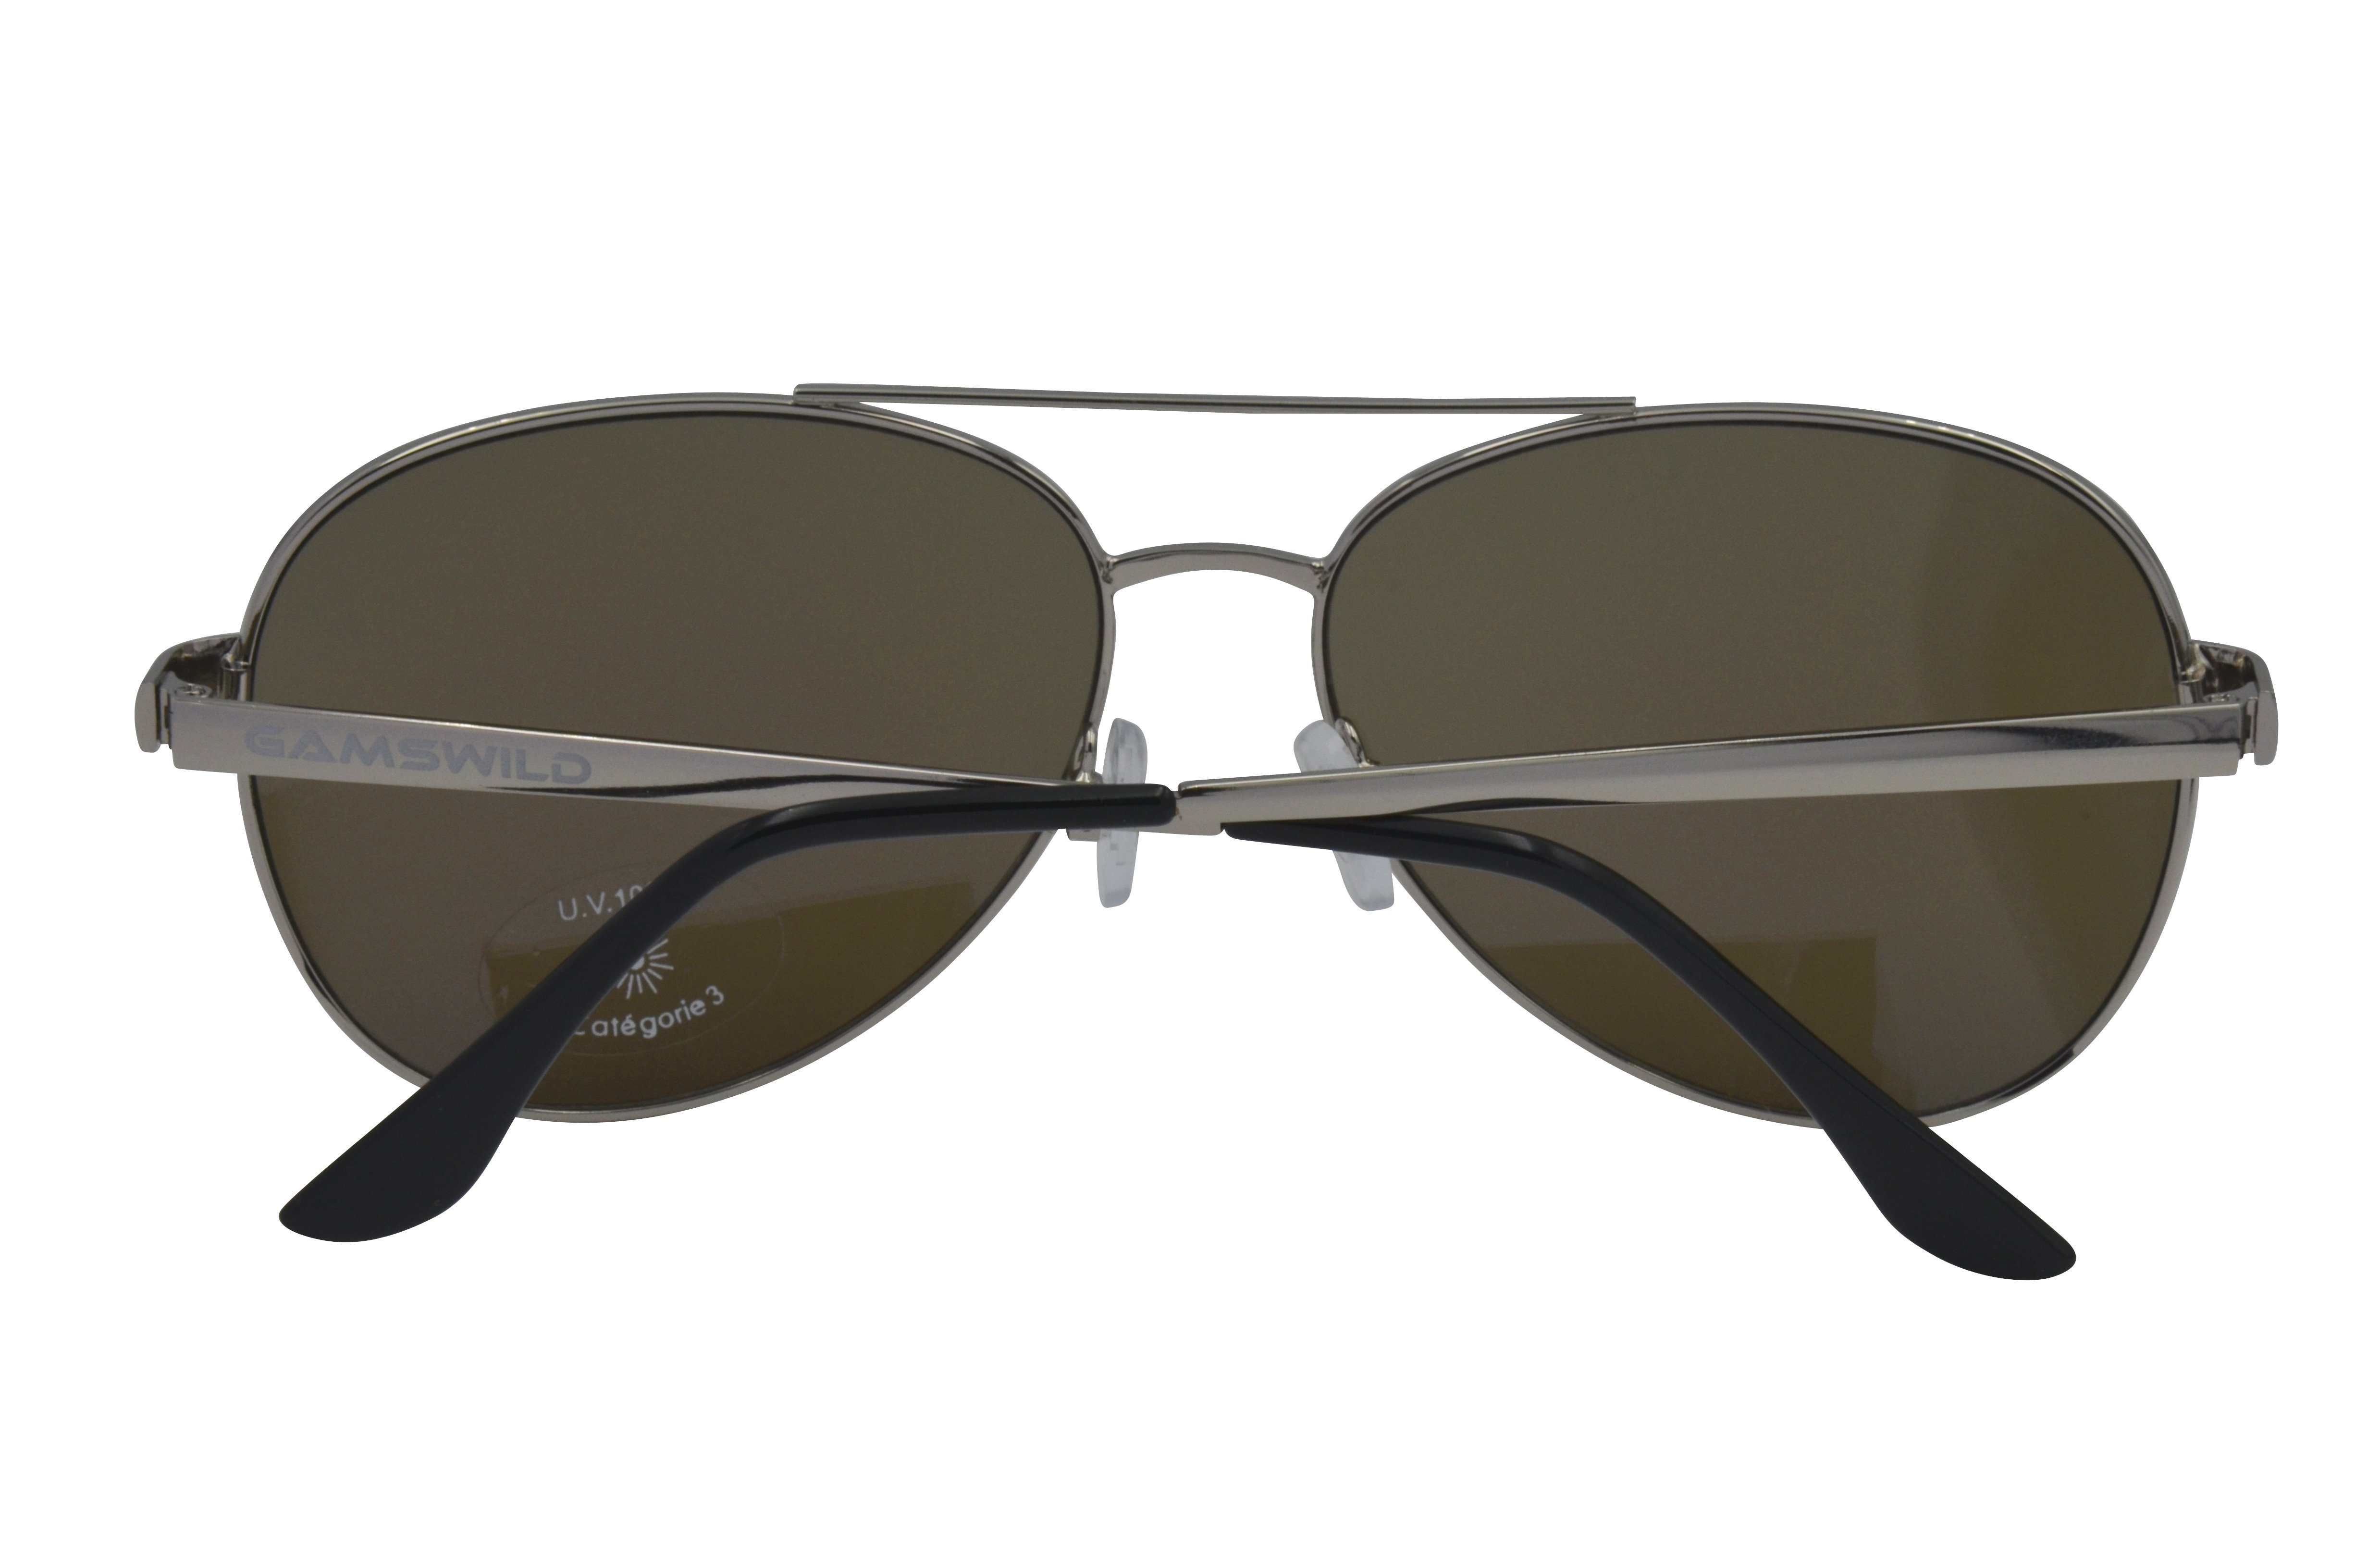 grün Sonnenbrille blau, Gamswild GAMSSTYLE goldfarben, WM7426 Mode Brille Unisex, Pilotenbrille